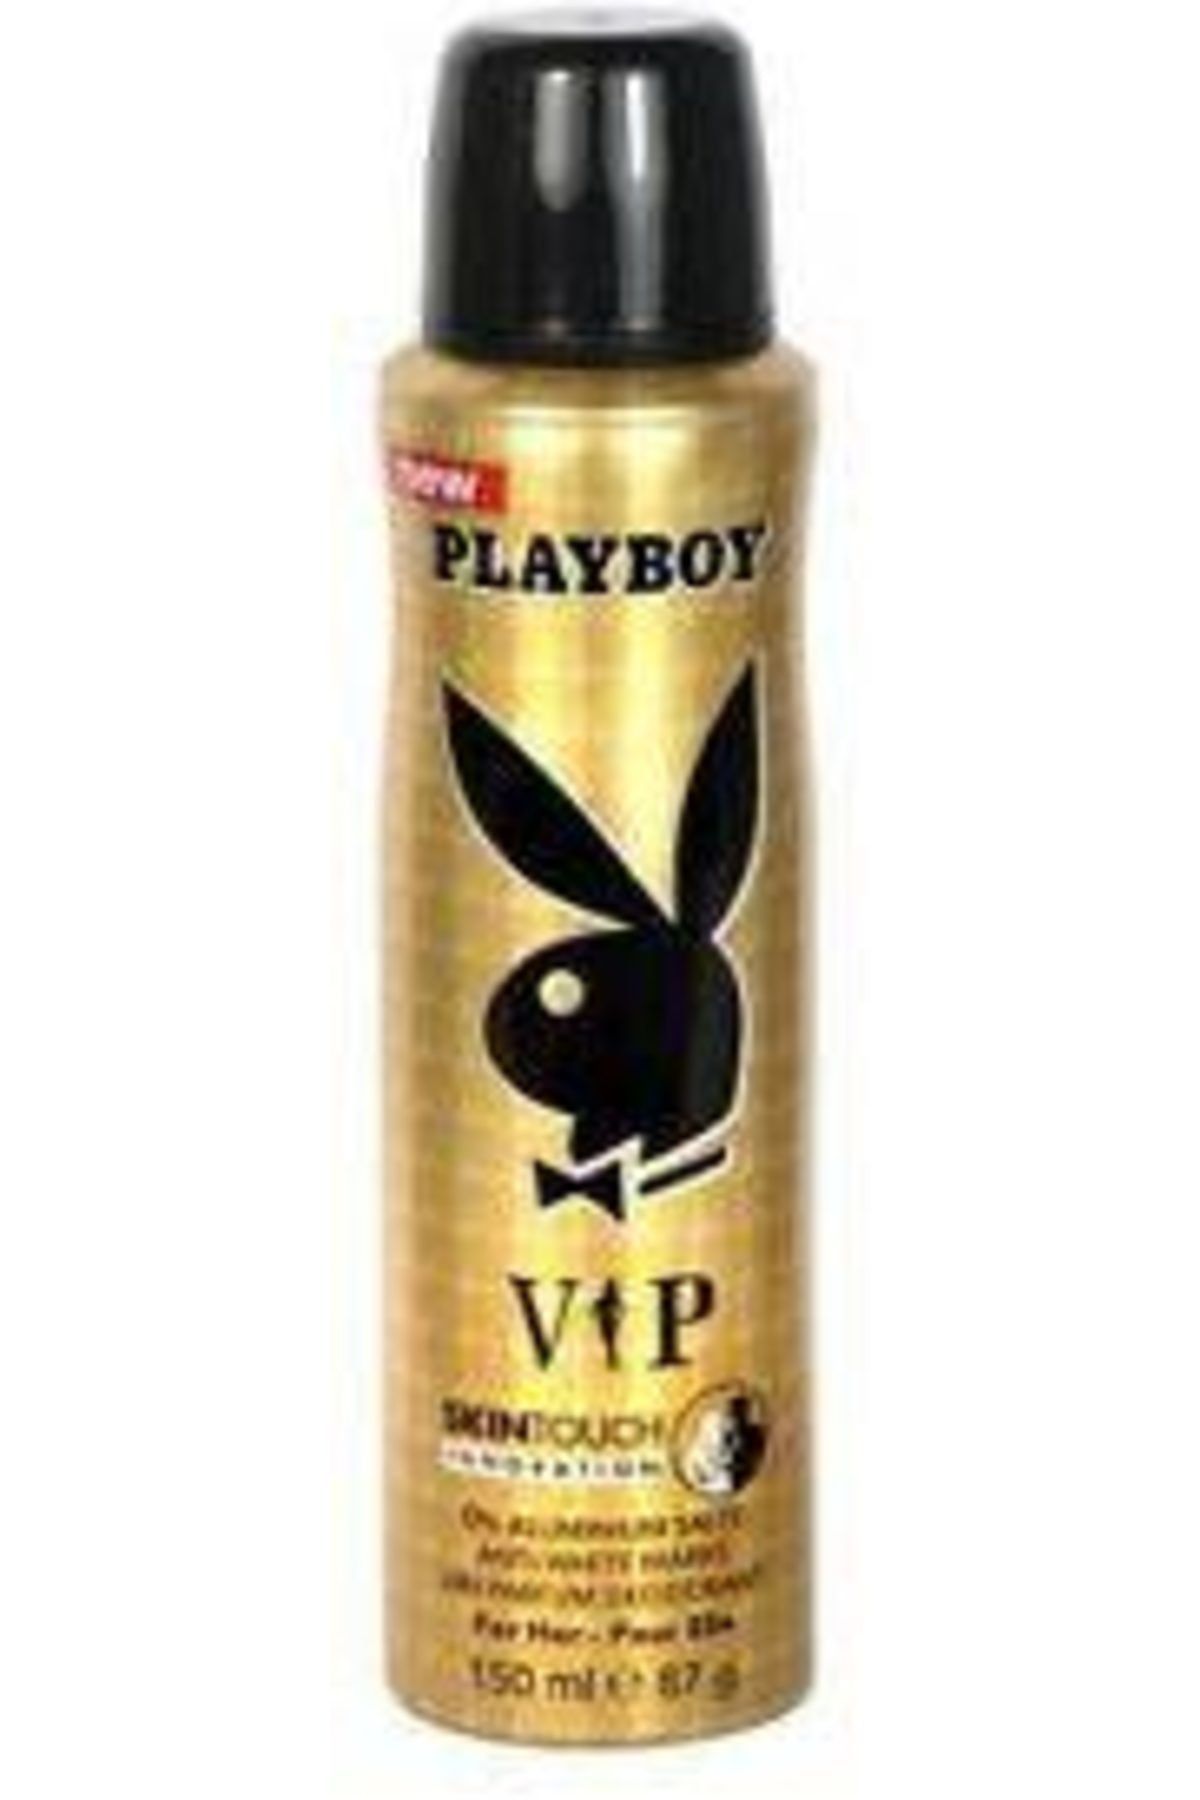 Playboy Vip Kadın Deodorant 150 ml 3614221641873